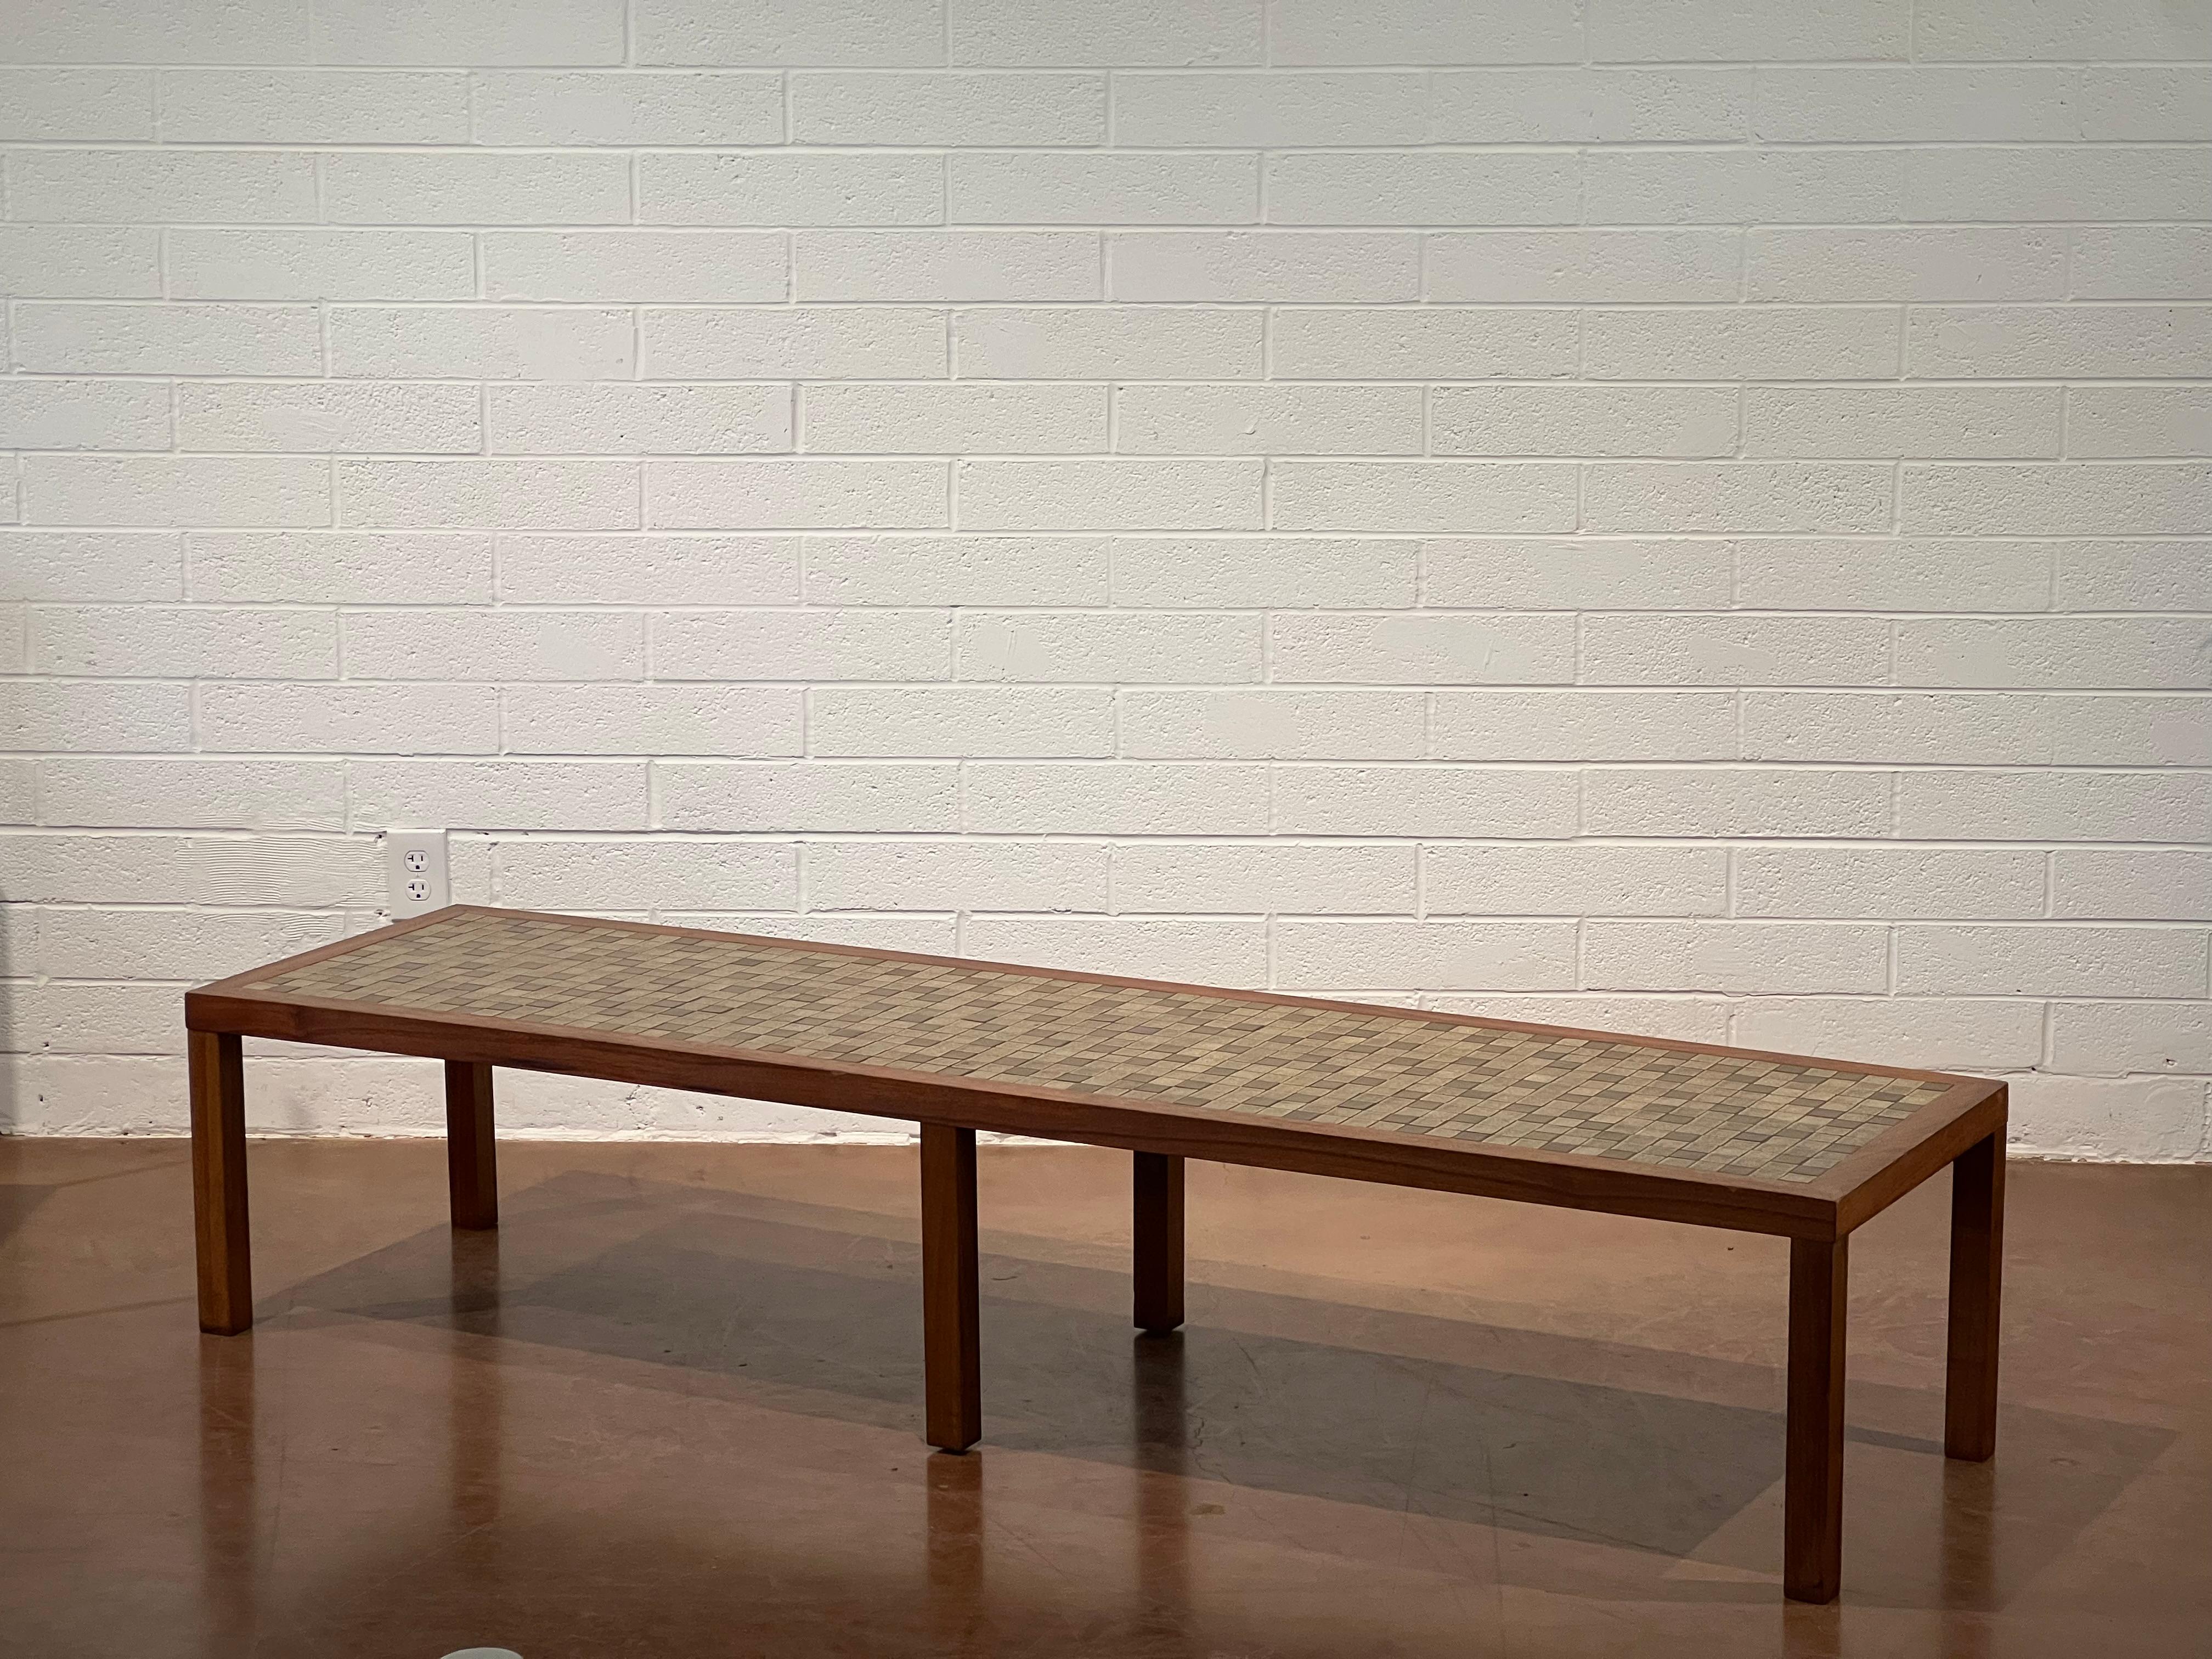 Extra langer rechteckiger Couchtisch von Gordon und Jane Martz für Marshall Studios. Die Tischplatte ist mit oliv- und taupefarbenen, quadratischen Keramikfliesen eingelegt, das Gestell und die Beine sind aus massivem Nussbaum. Es ist in sehr gutem